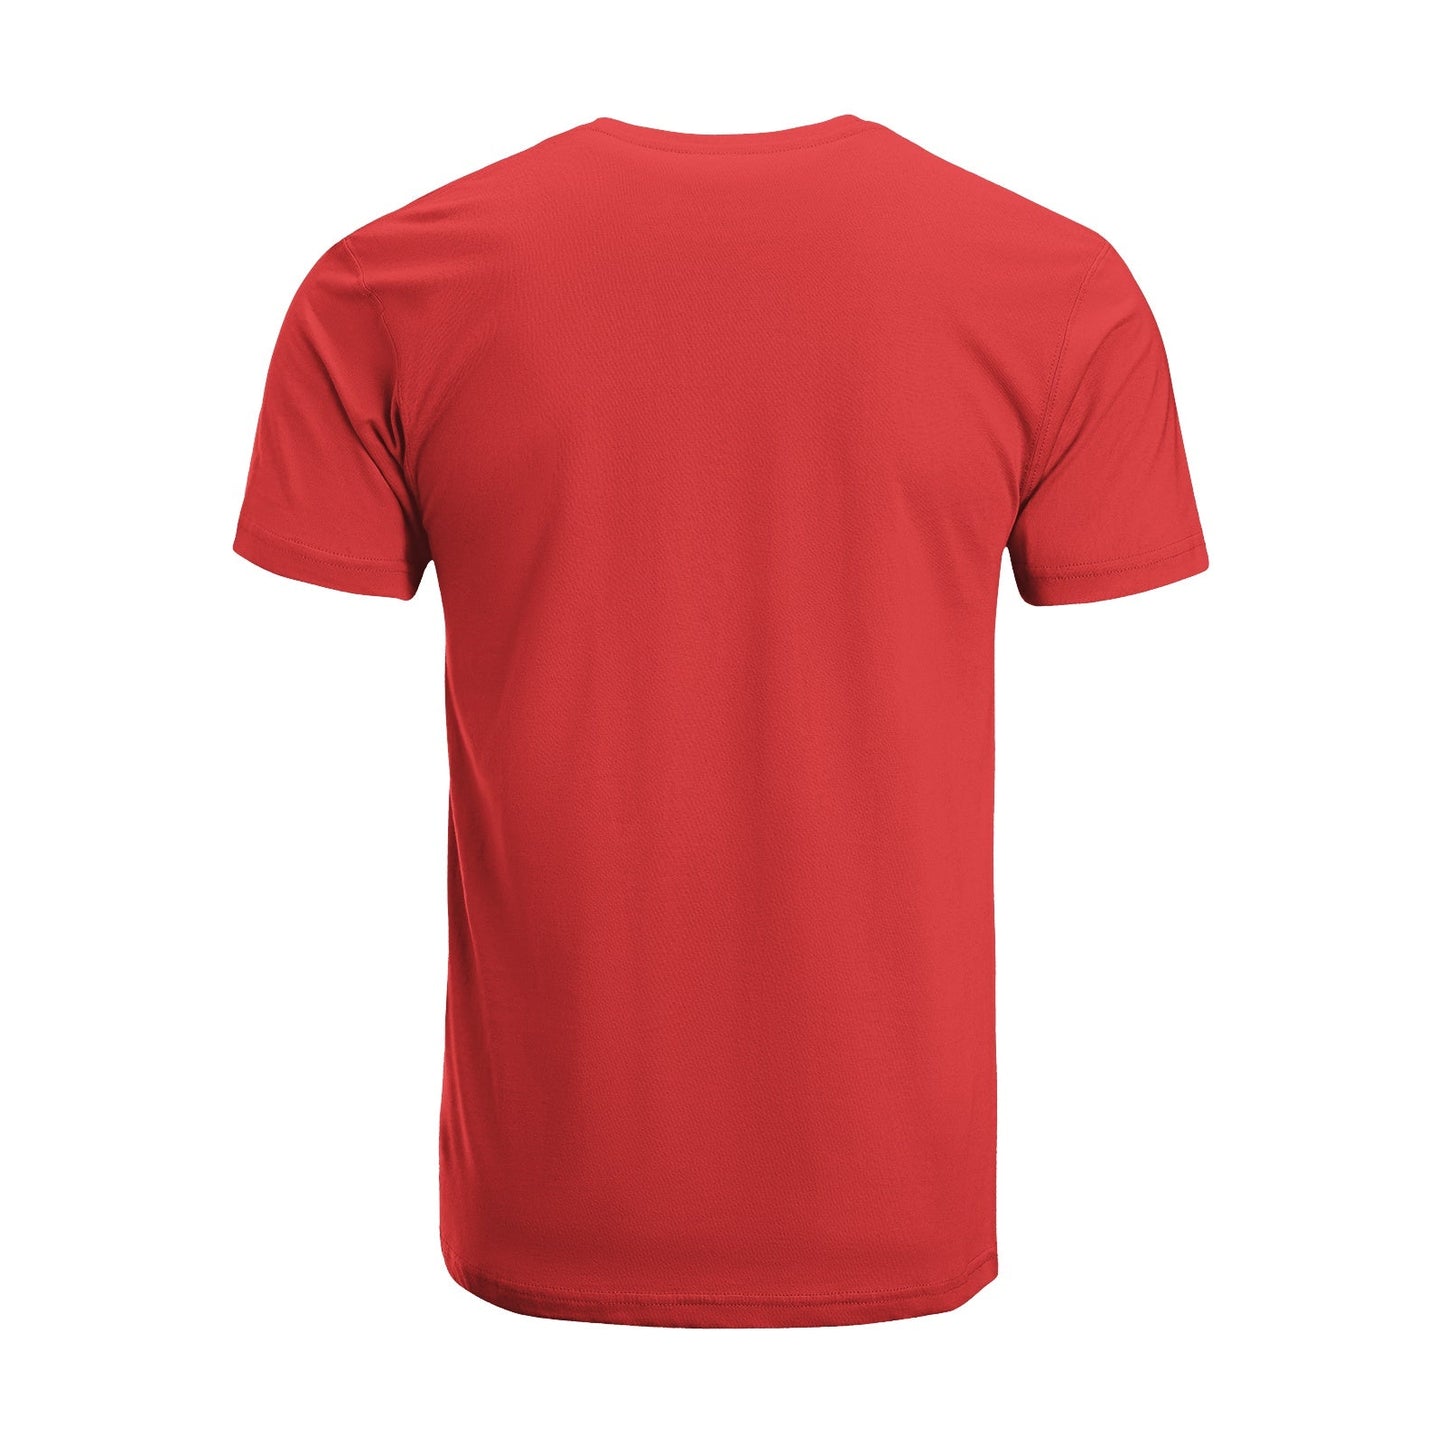 Unisex Short Sleeve Crew Neck Cotton Jersey T-Shirt TRUCK 20